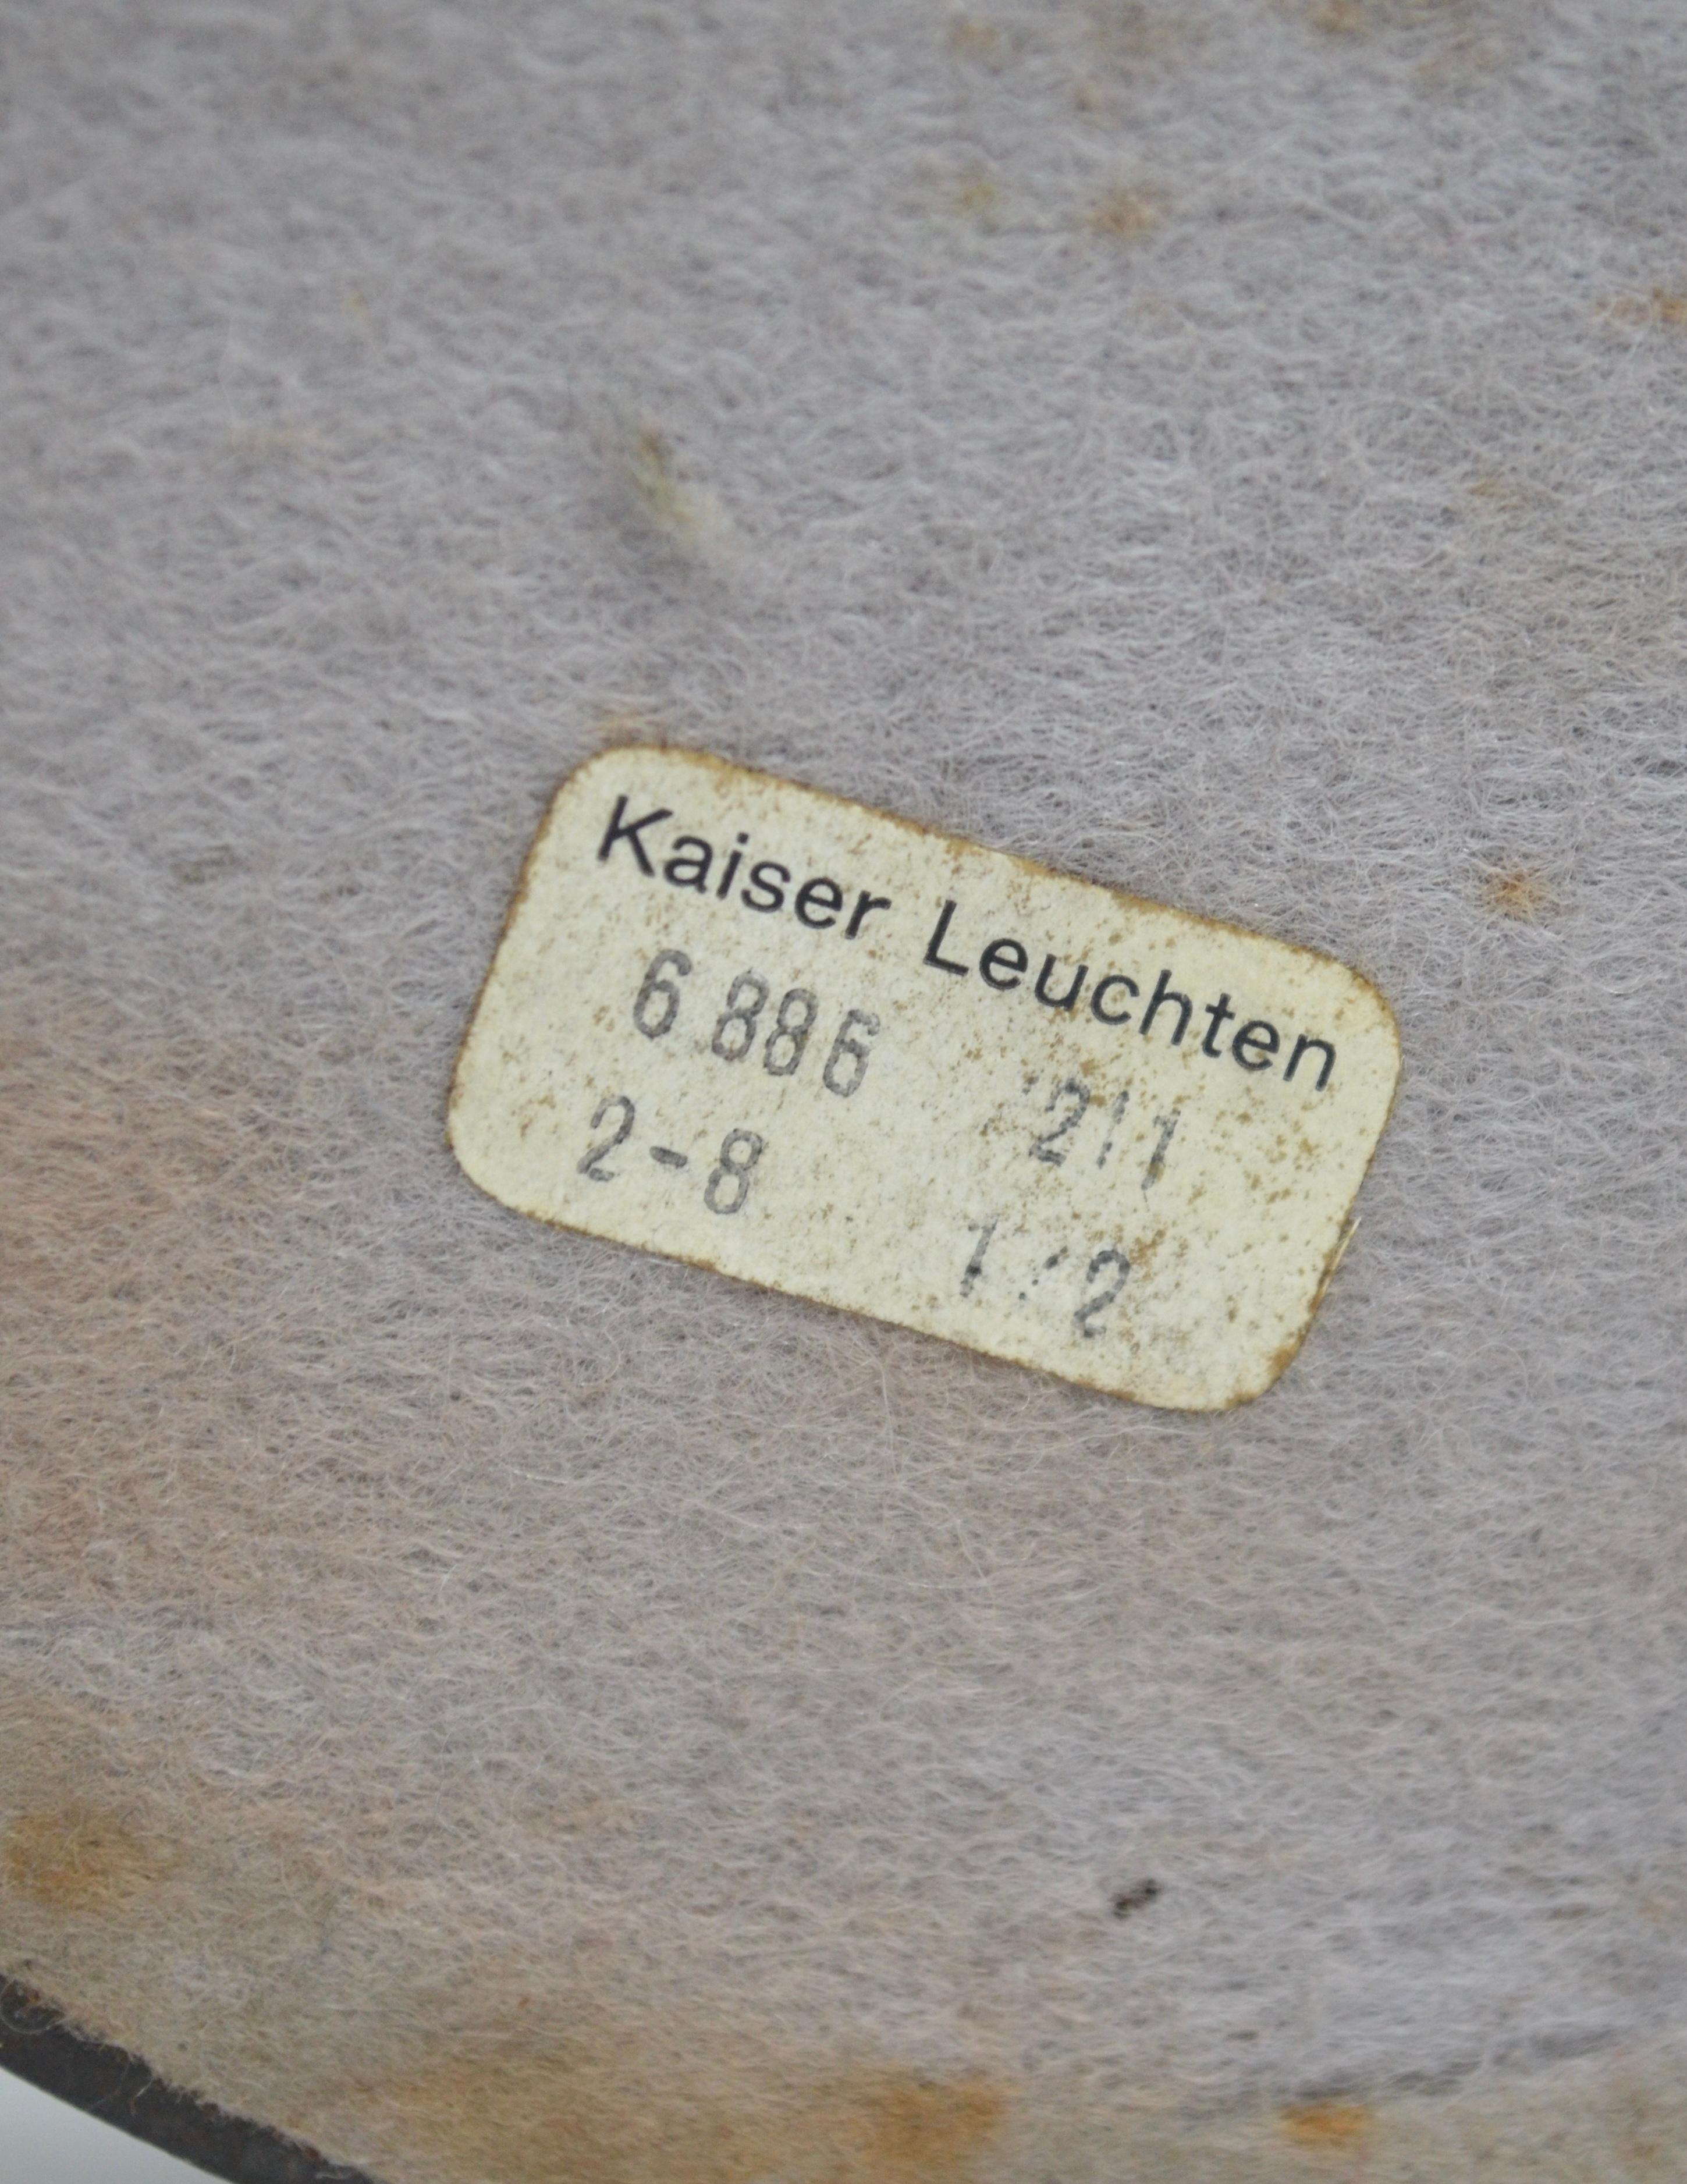 Rare 6886 model table lamp, Kaiser, Germany, 1960s For Sale 3